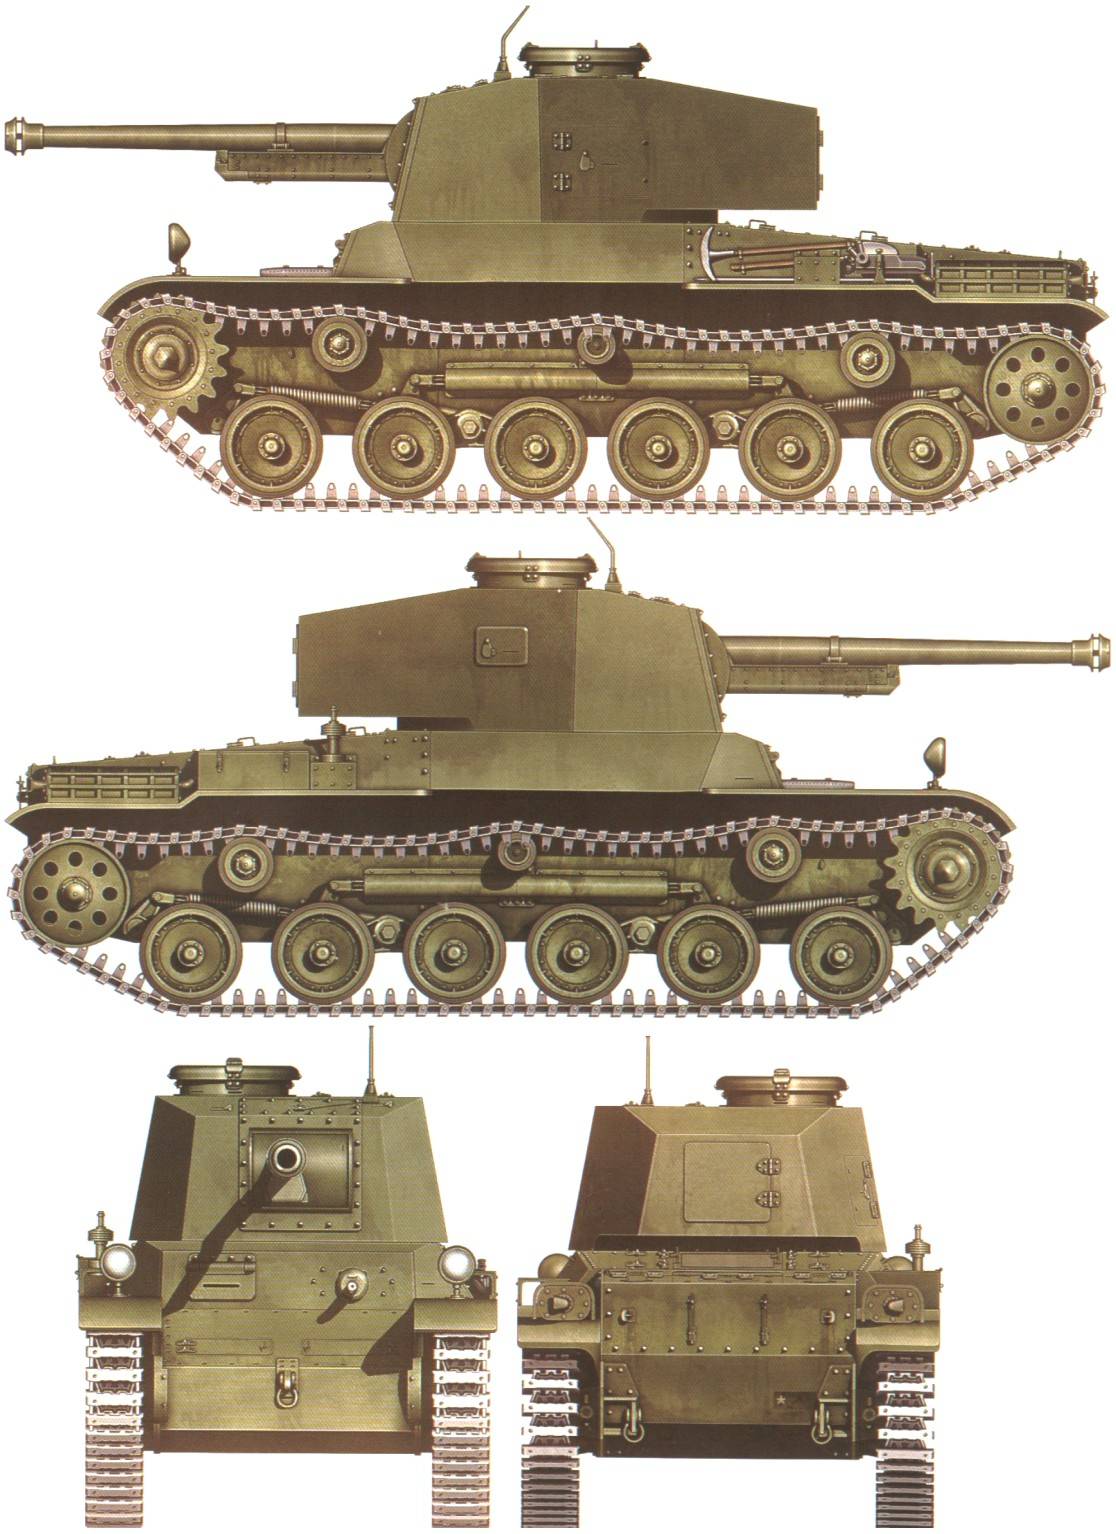 Type 3 chi-nu - обзор, гайд, характеристика, секреты среднего танка type 3 chi-nu из игры wot на официальном сайте wiki.wargaming.net